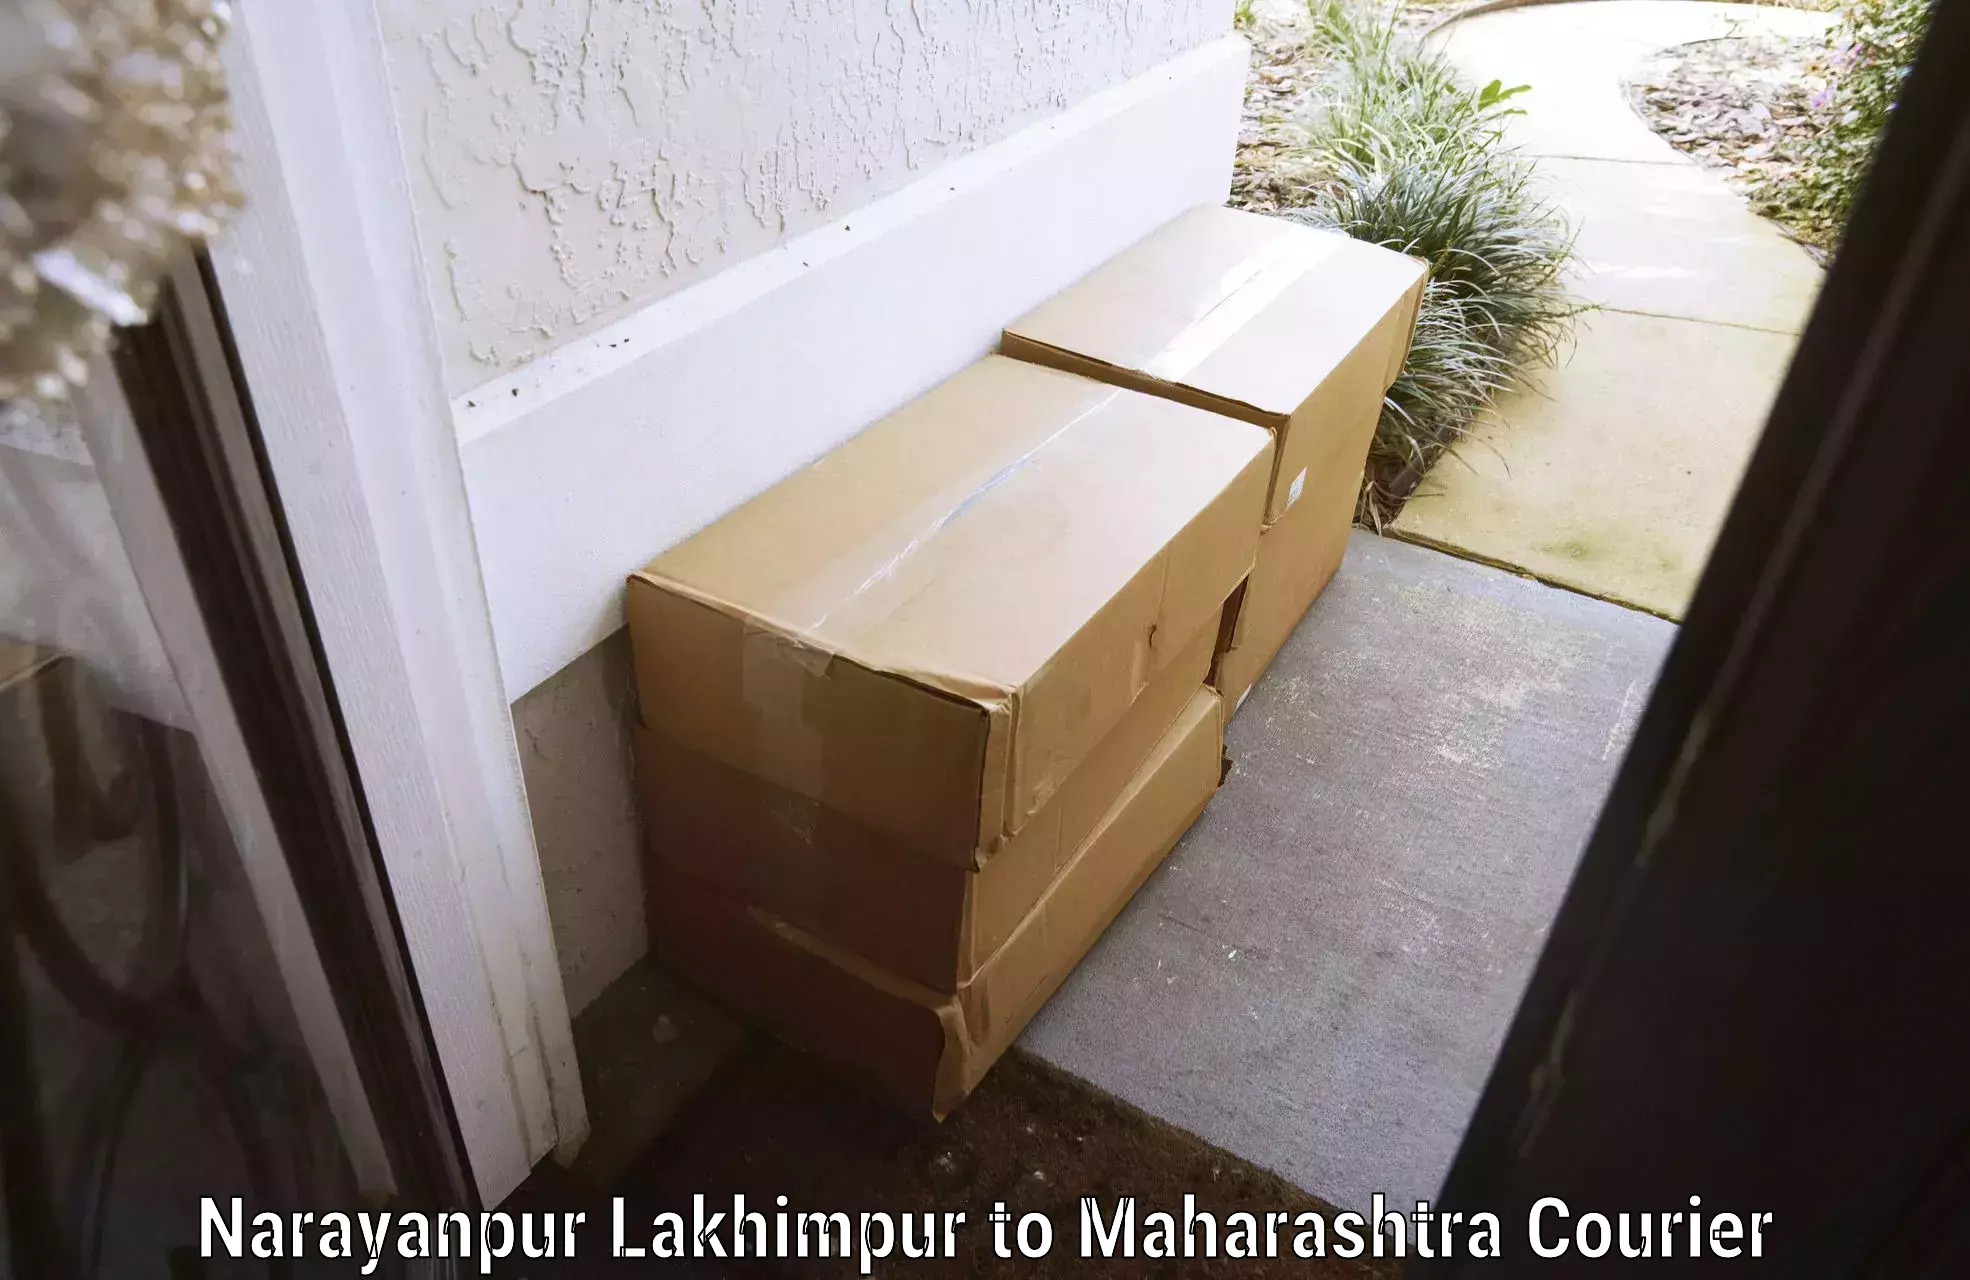 Baggage transport scheduler Narayanpur Lakhimpur to Maharashtra